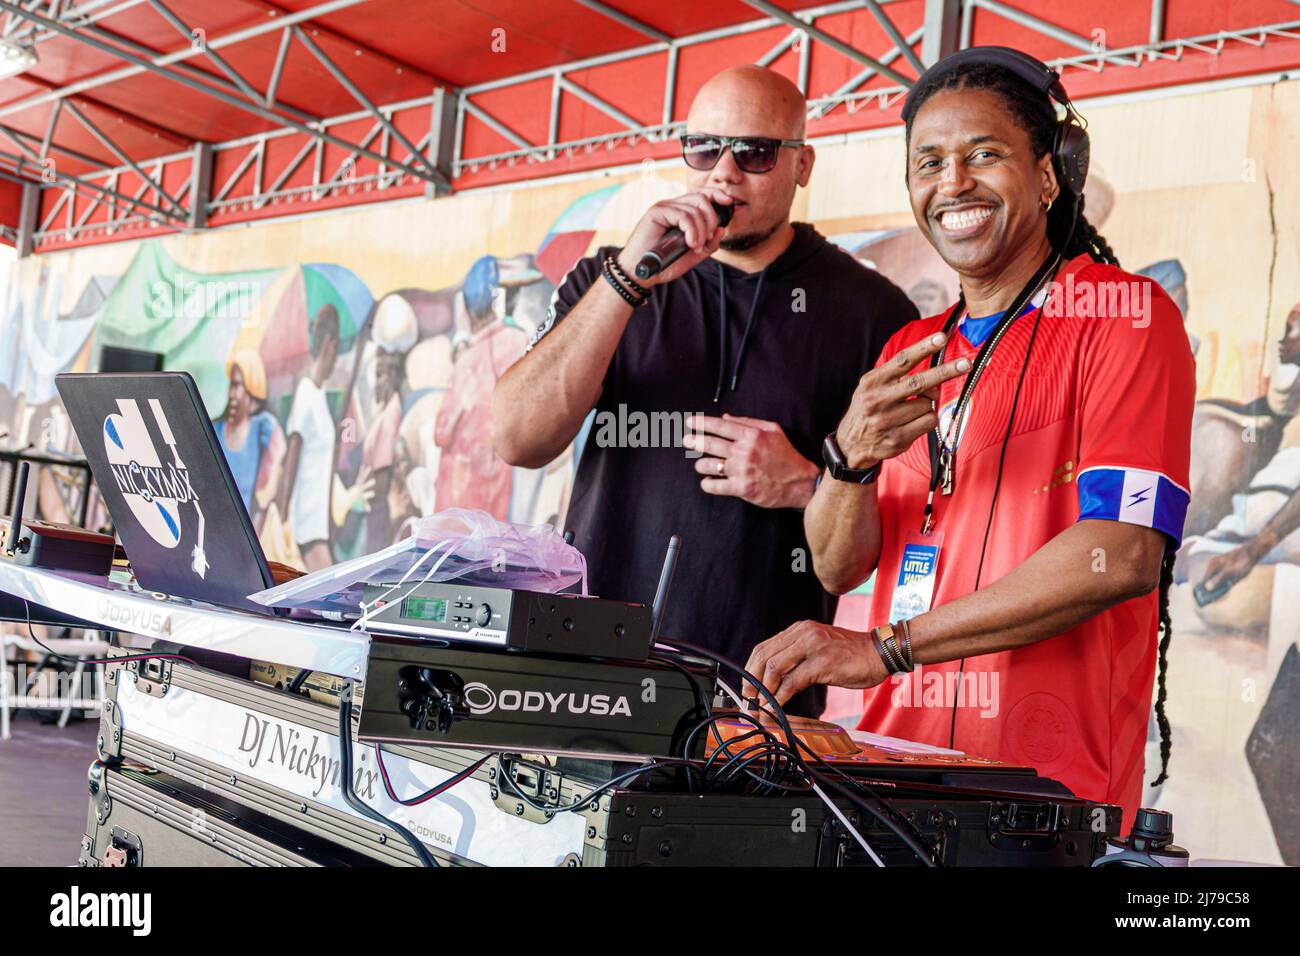 Miami Florida Little Haiti comunità haitiana evento annuale Book Festival Centro culturale complesso Creole cultura uomini neri DJ mc microfono emcee Foto Stock